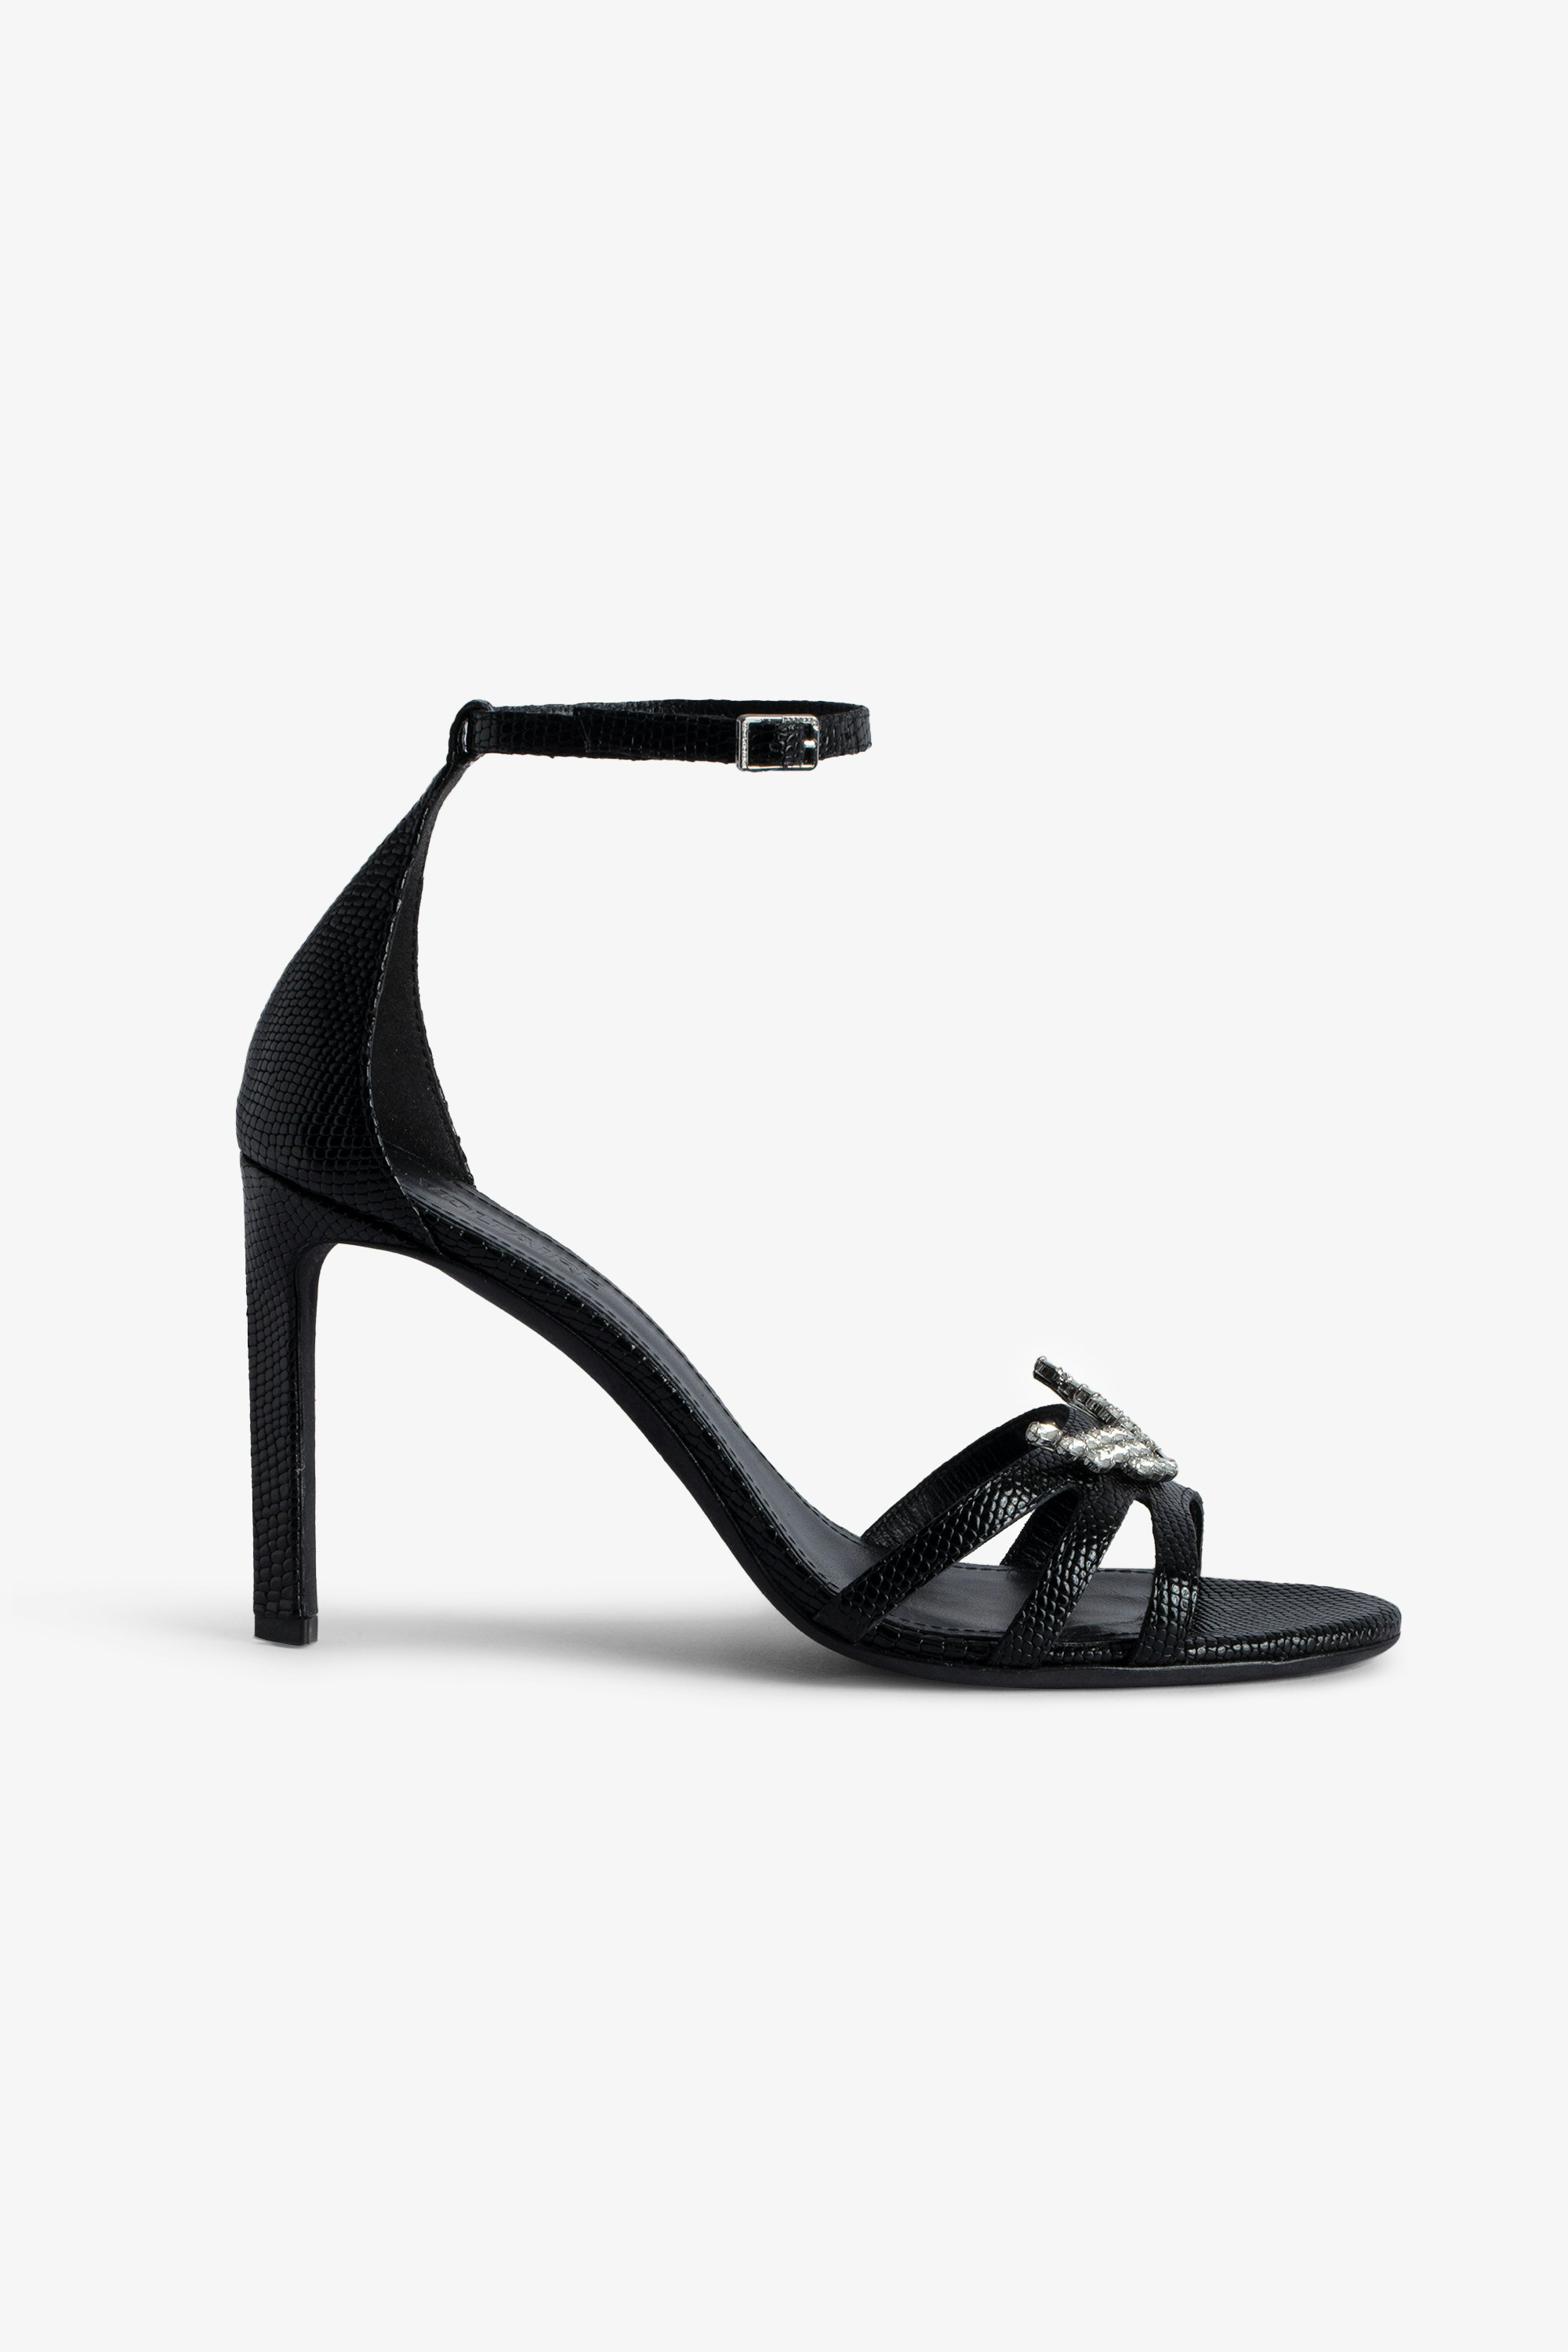 Zapatos de salón Amee Wing - Zapatos de salón negros de piel repujada efecto iguana con correas y colgante de alas con strass para mujer.